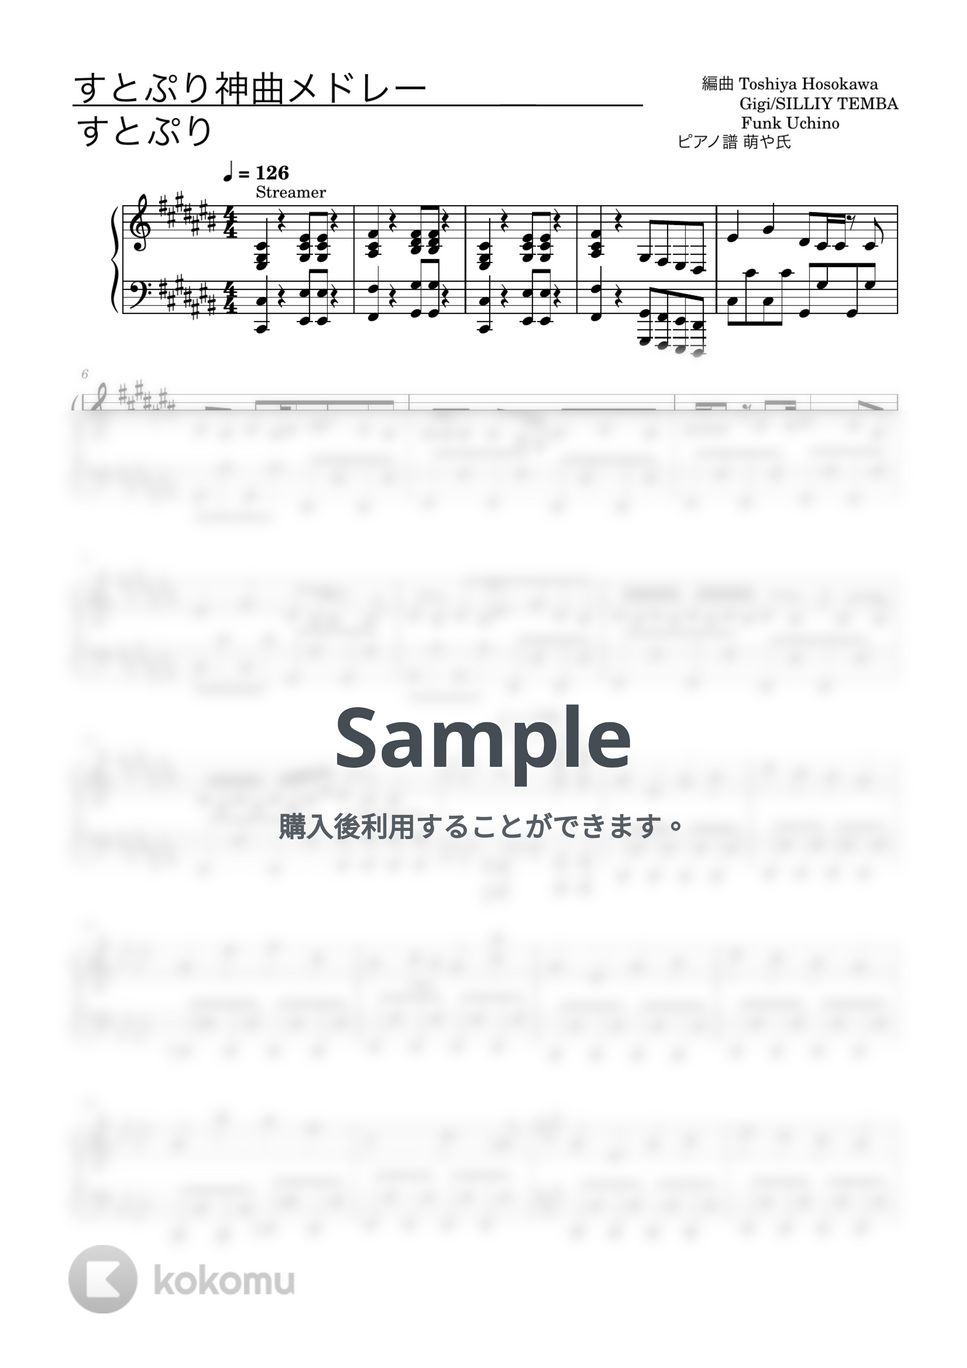 すとぷり - すとぷり神曲メドレー (ピアノソロ譜) by 萌や氏